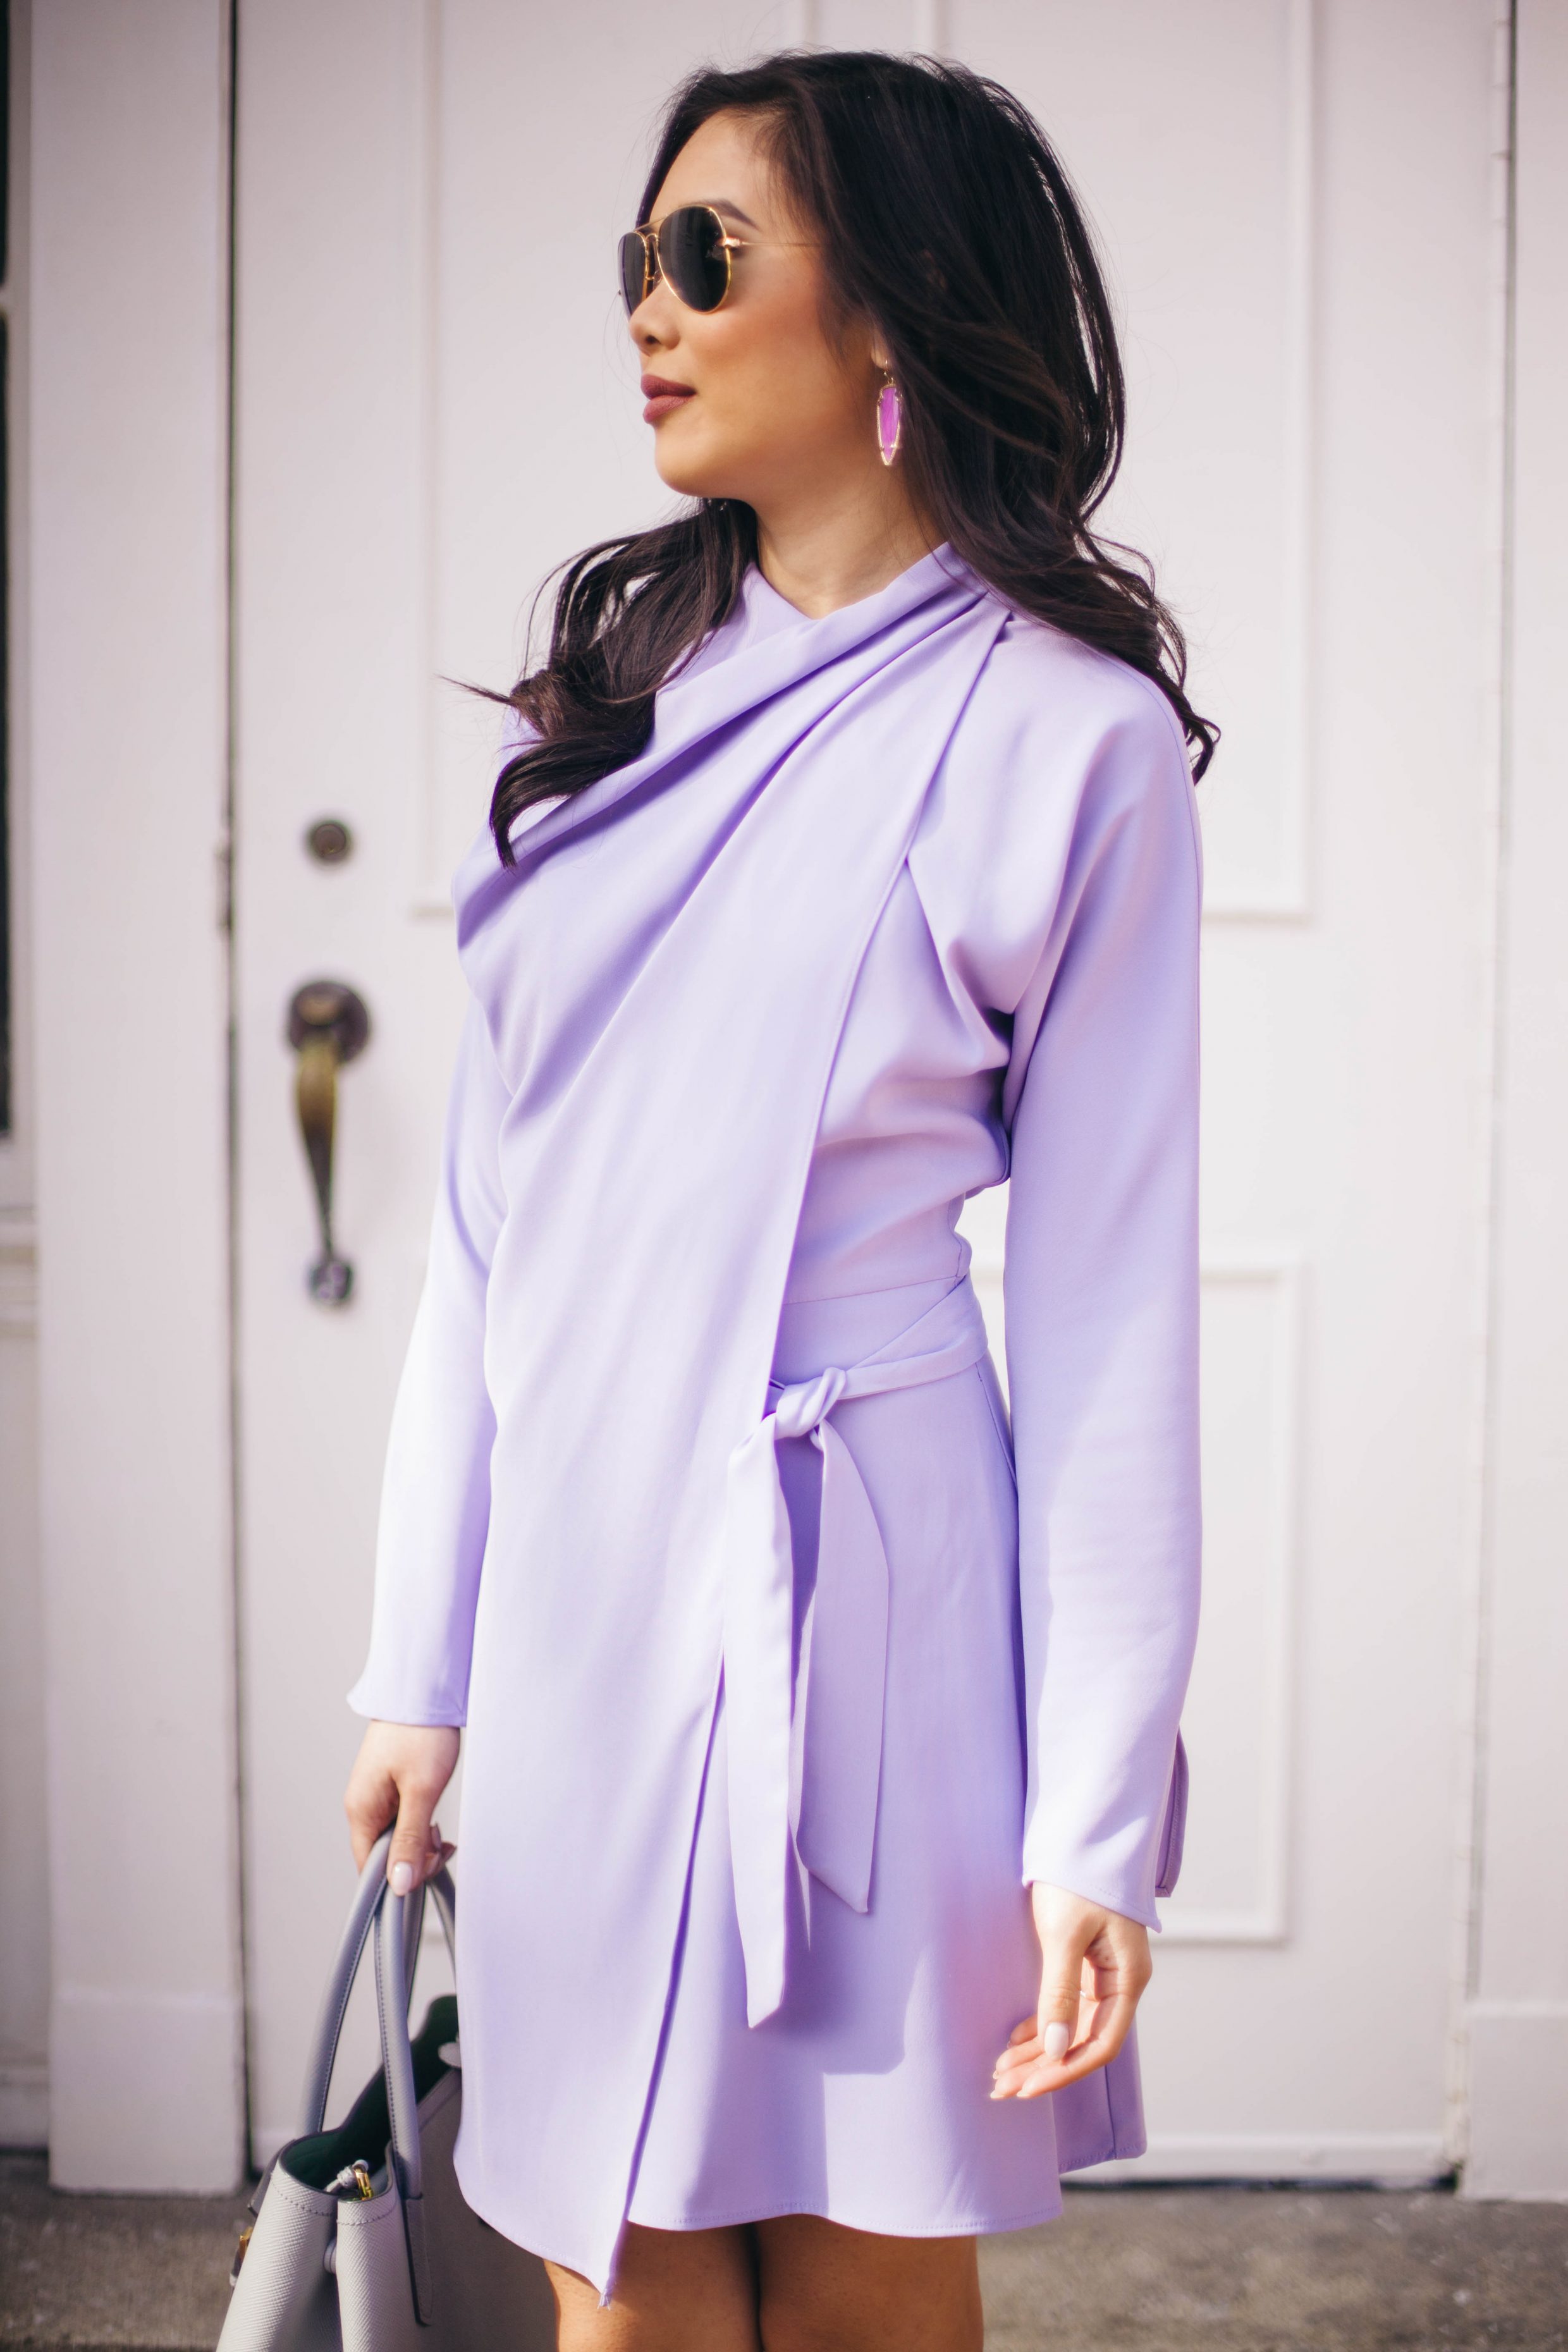 Pastel Tones - Lilac Drape Dress + Blush Heels - Color & Chic